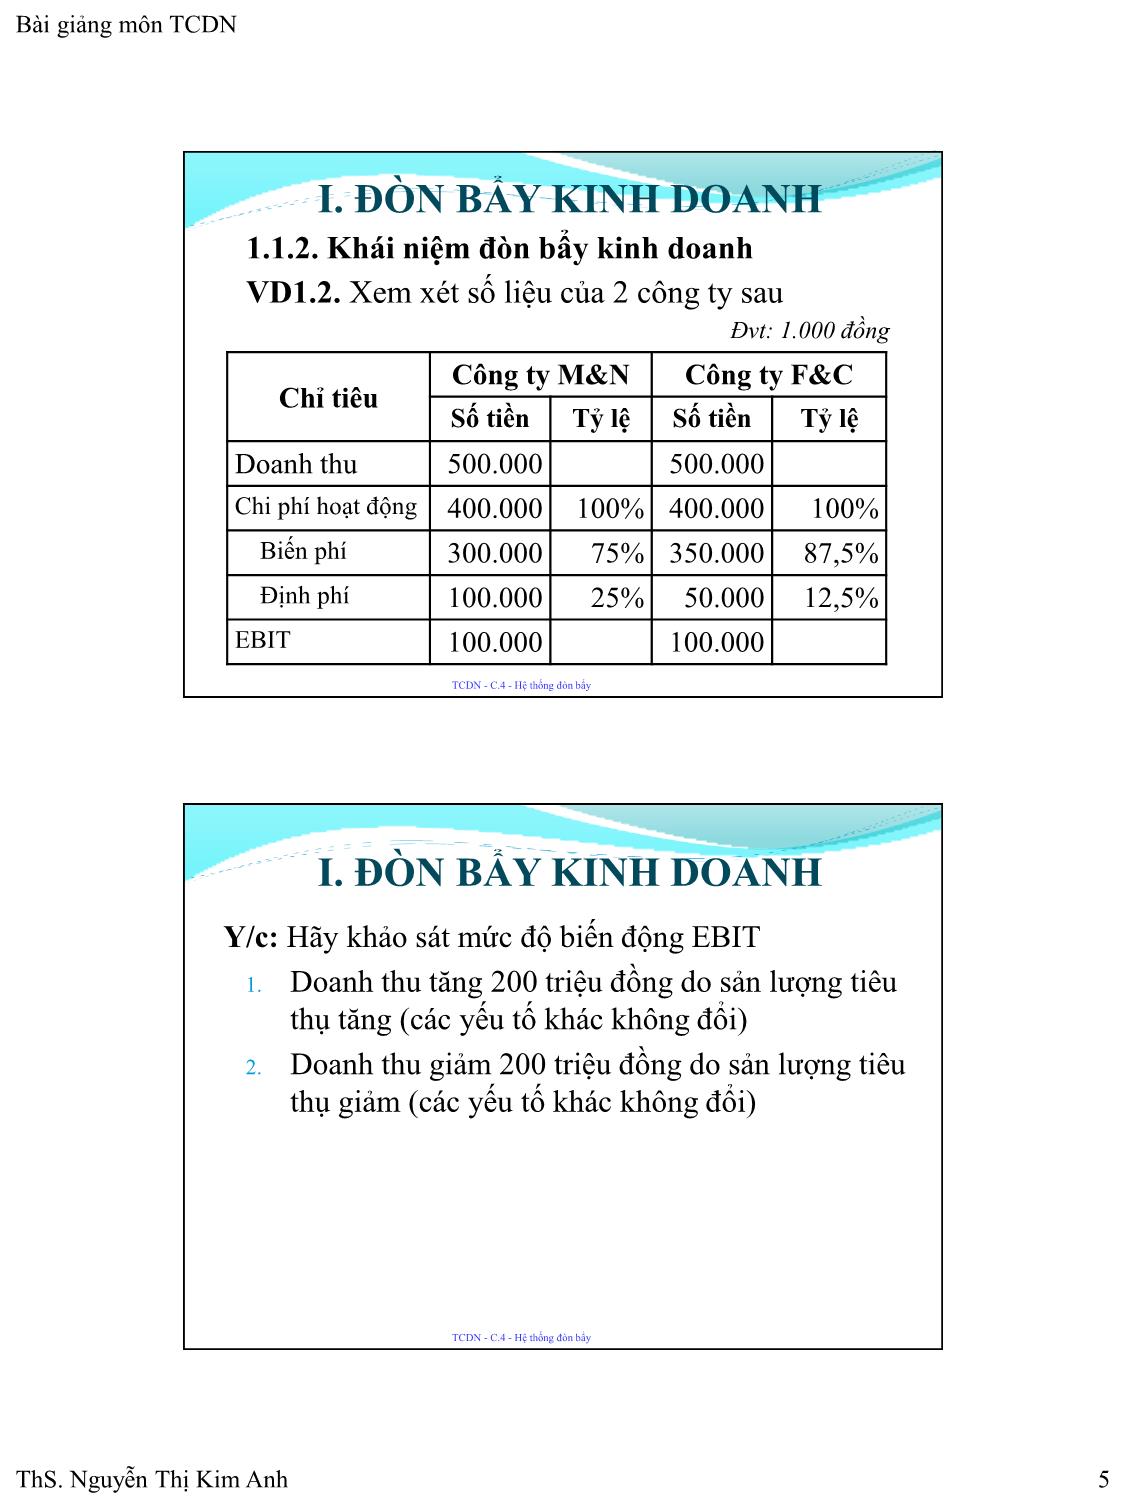 Bài giảng Tài chính doanh nghiệp - Chương 4: Hệ thống đòn bẩy - Nguyễn Thị Kim Anh trang 5